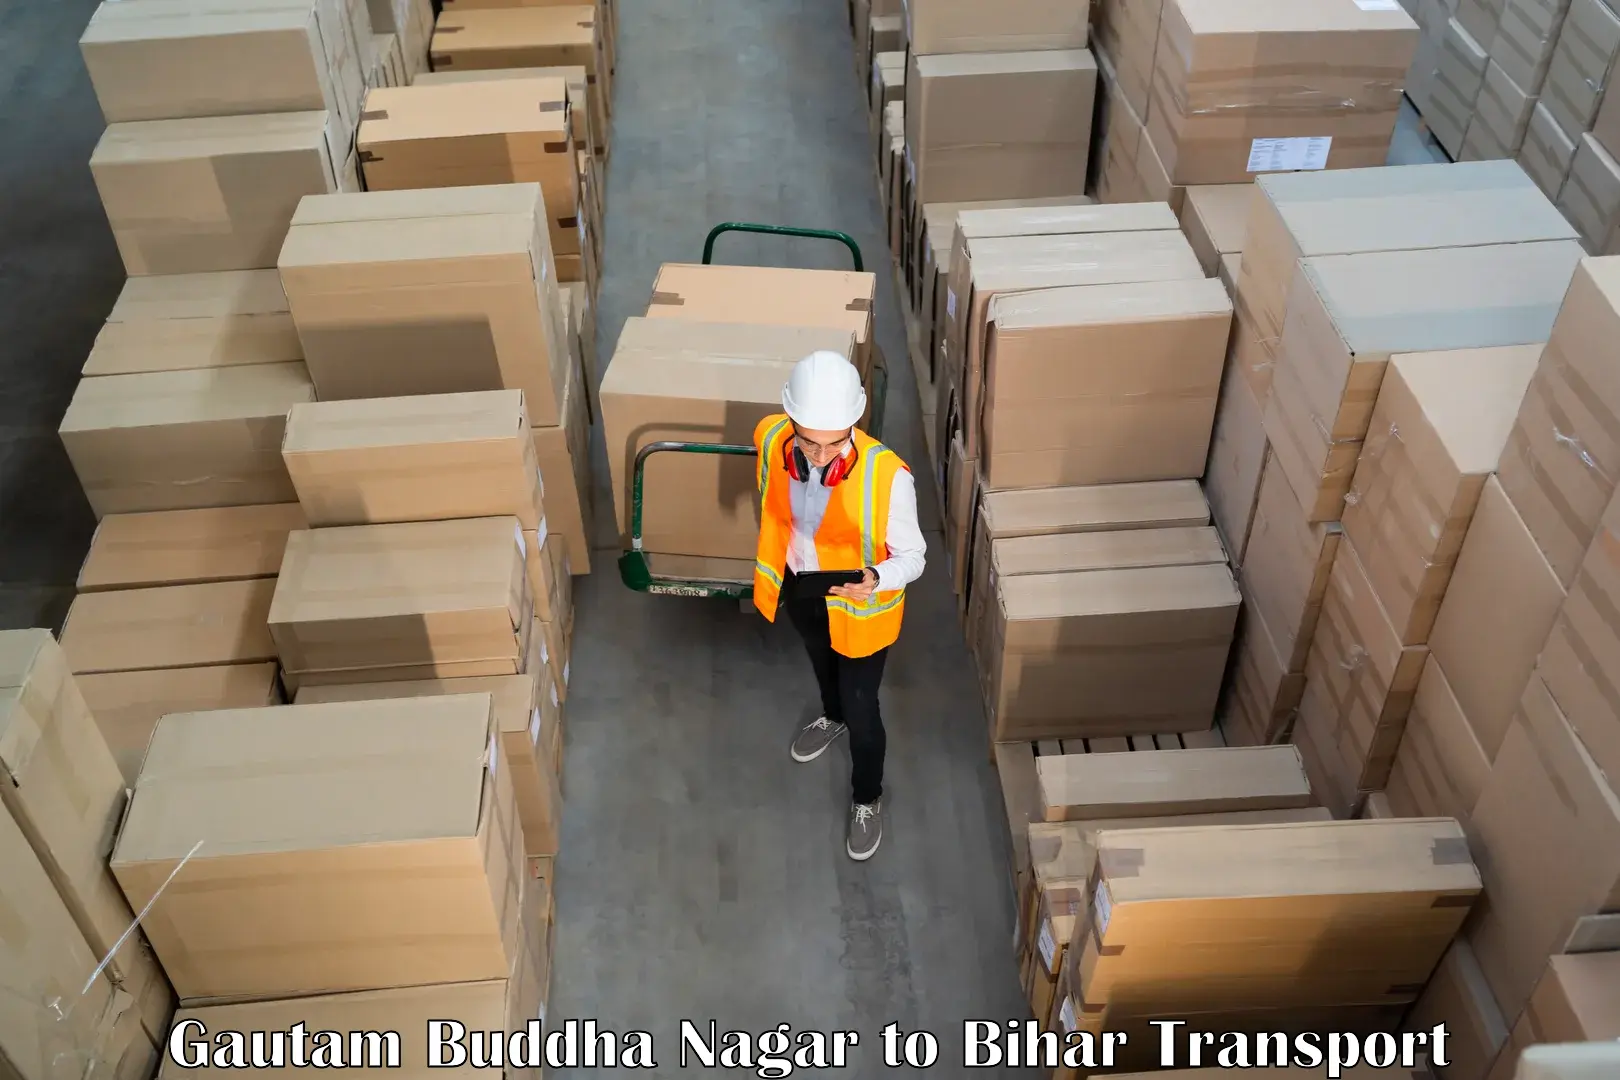 Container transport service Gautam Buddha Nagar to Saran